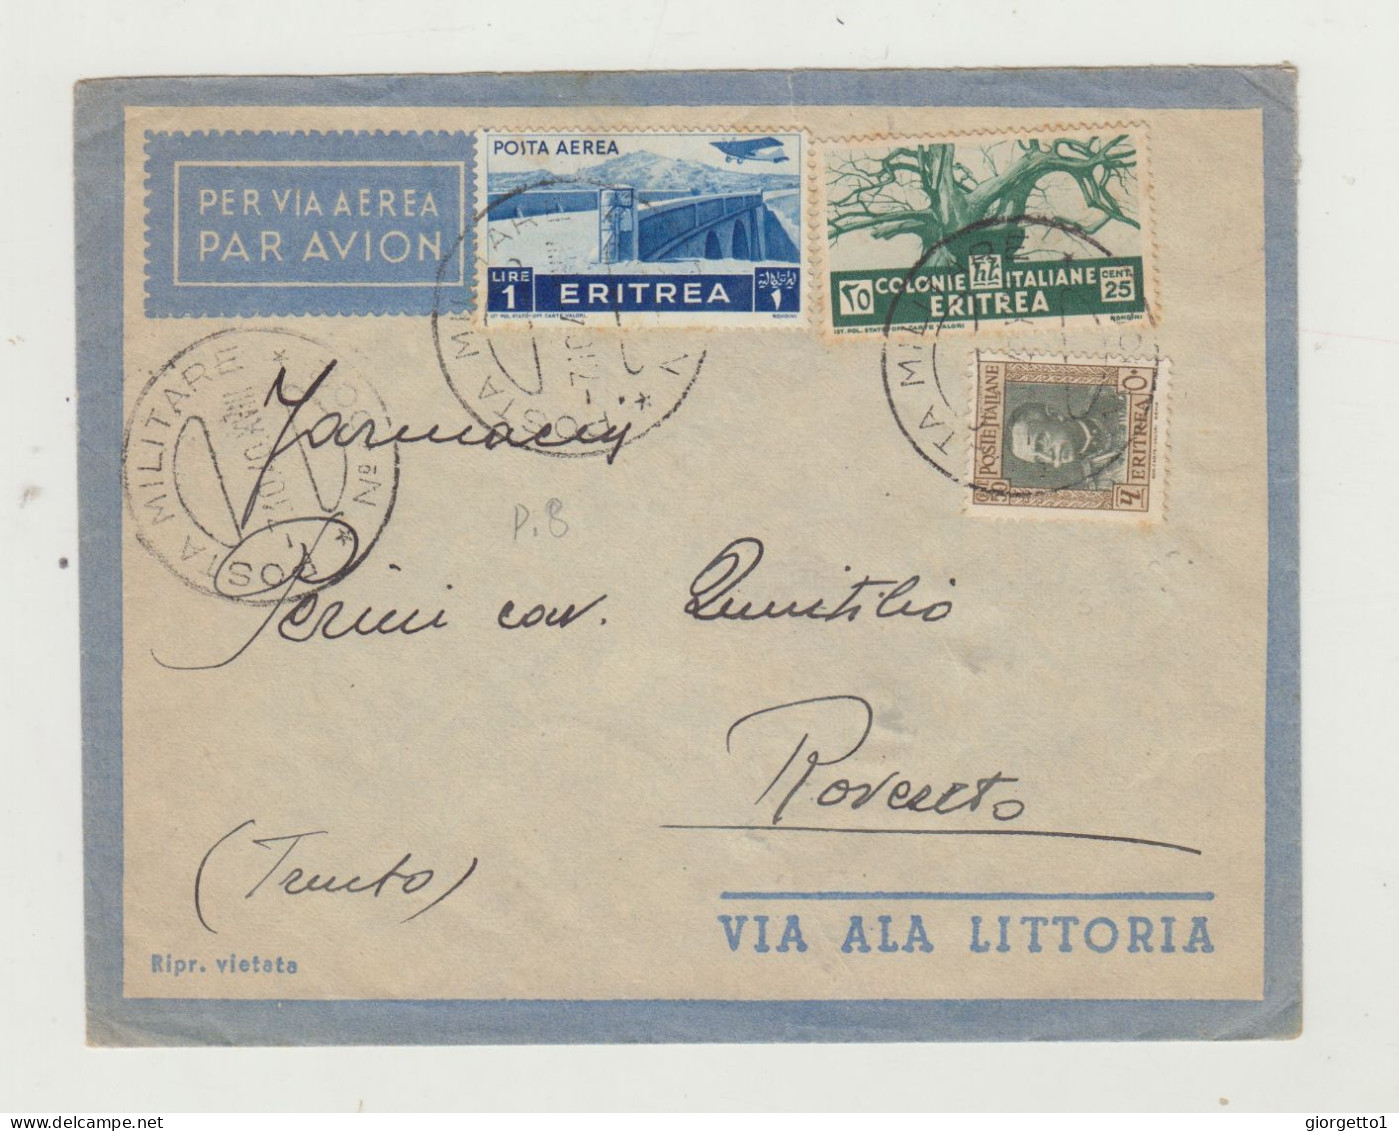 BUSTA SENZA LETTERA - VIA ALA LITTORIA - POSTA MILITARE DEL 1940 COLONIA ITALIANA ERITREA WW2 - Marcophilie (Avions)